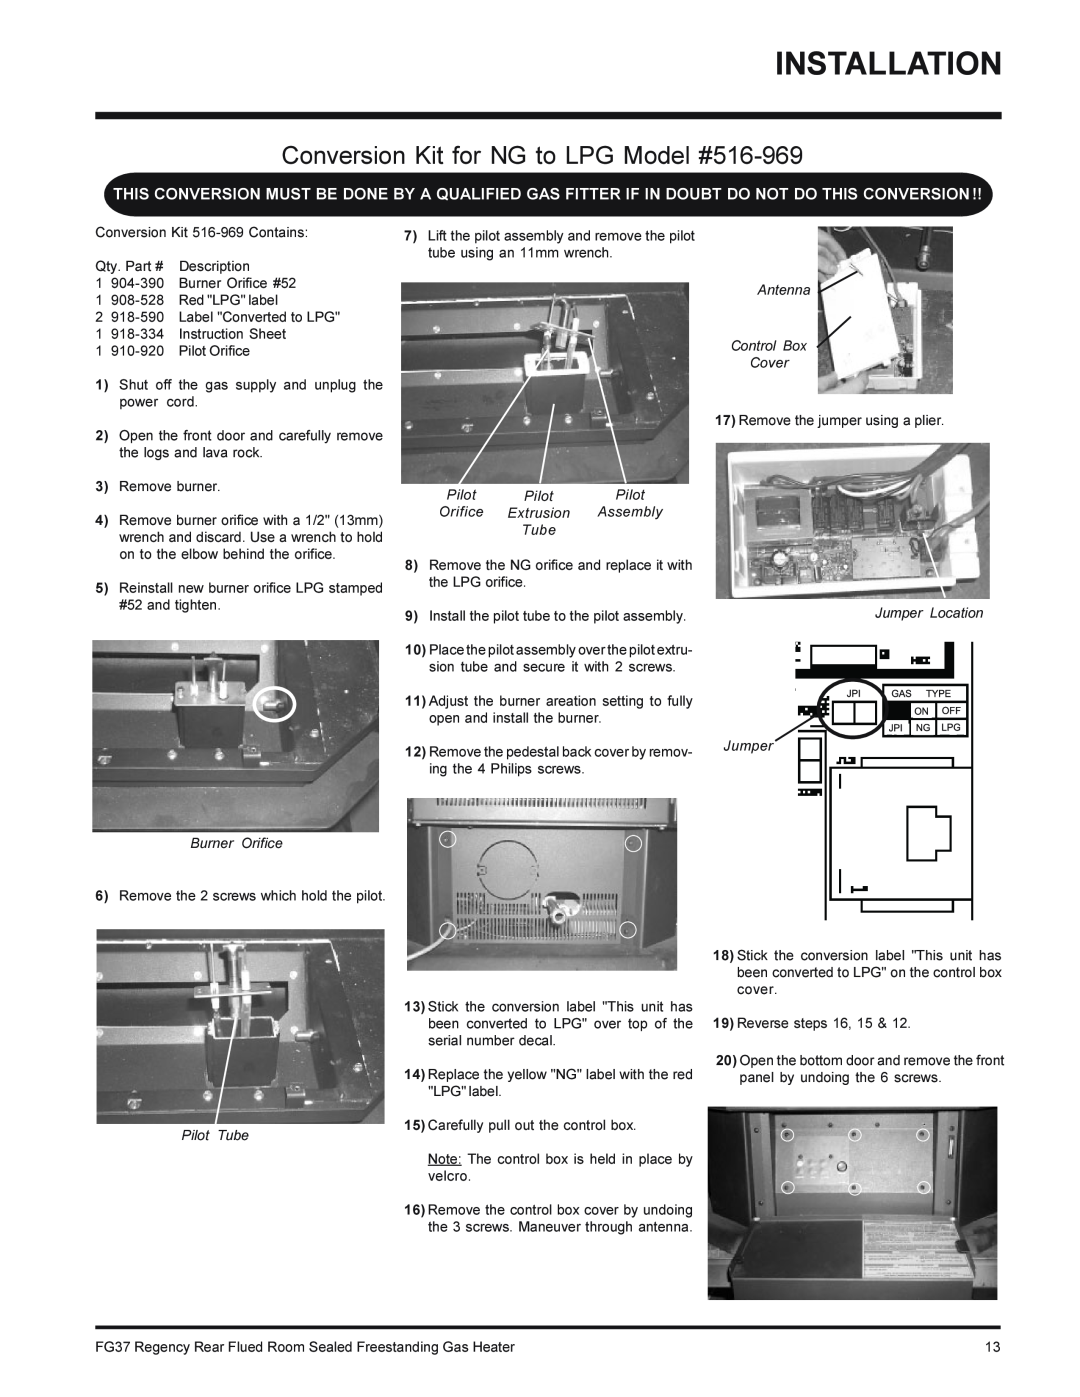 Regency FG37-NG, FG37-LPG installation manual Conversion Kit for NG to LPG Model #516-969 